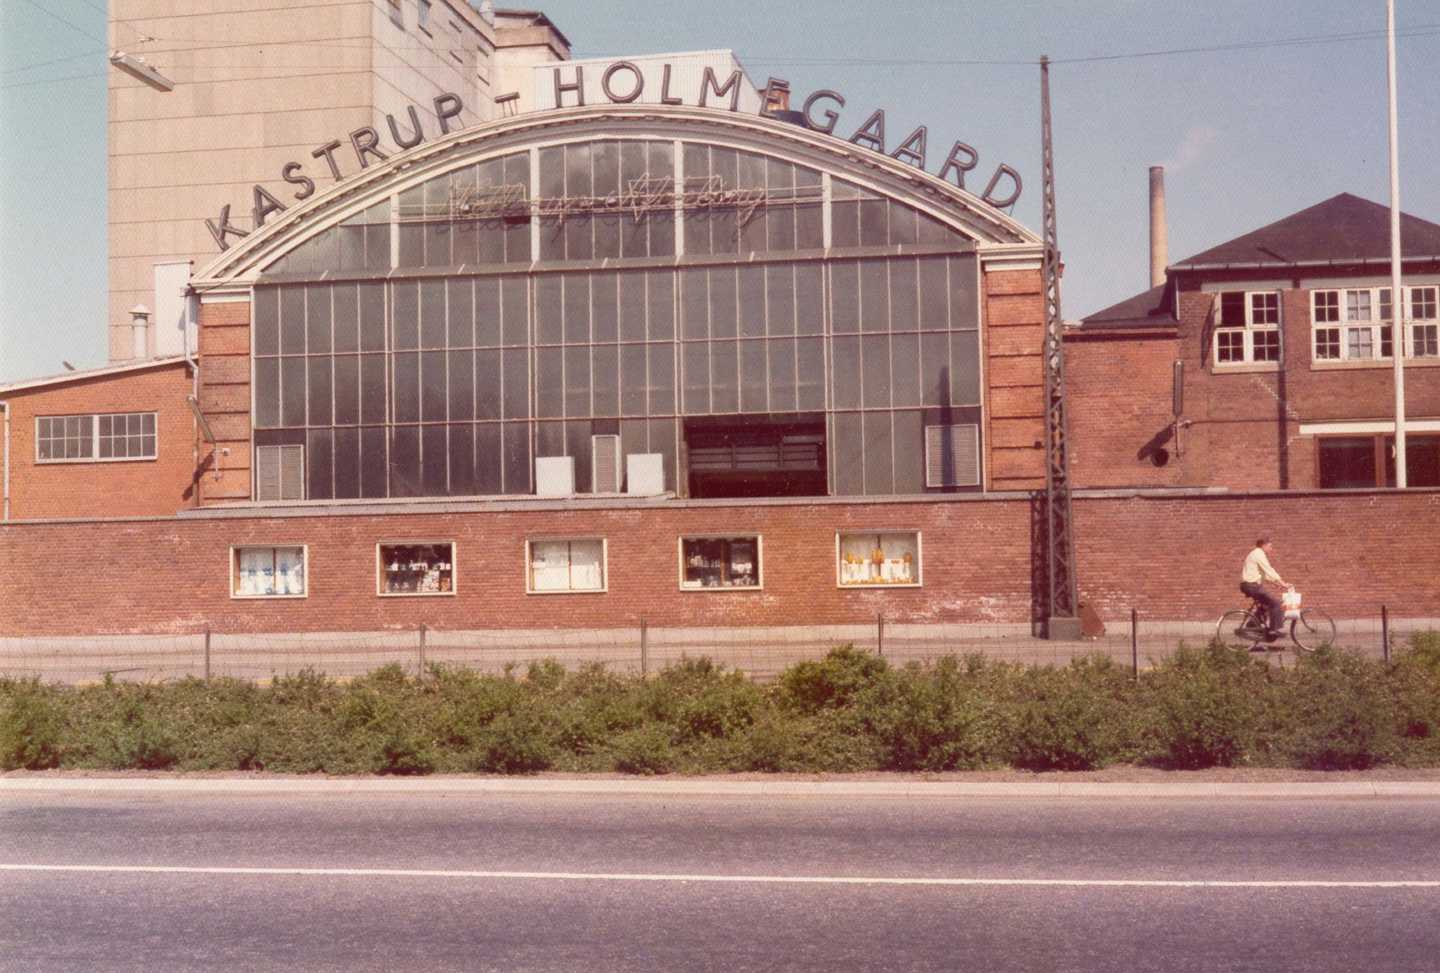 Fabriksbygning med stort glasparti og rundet tag. Langs tagkanten står "Katrup-Holmegaard" 